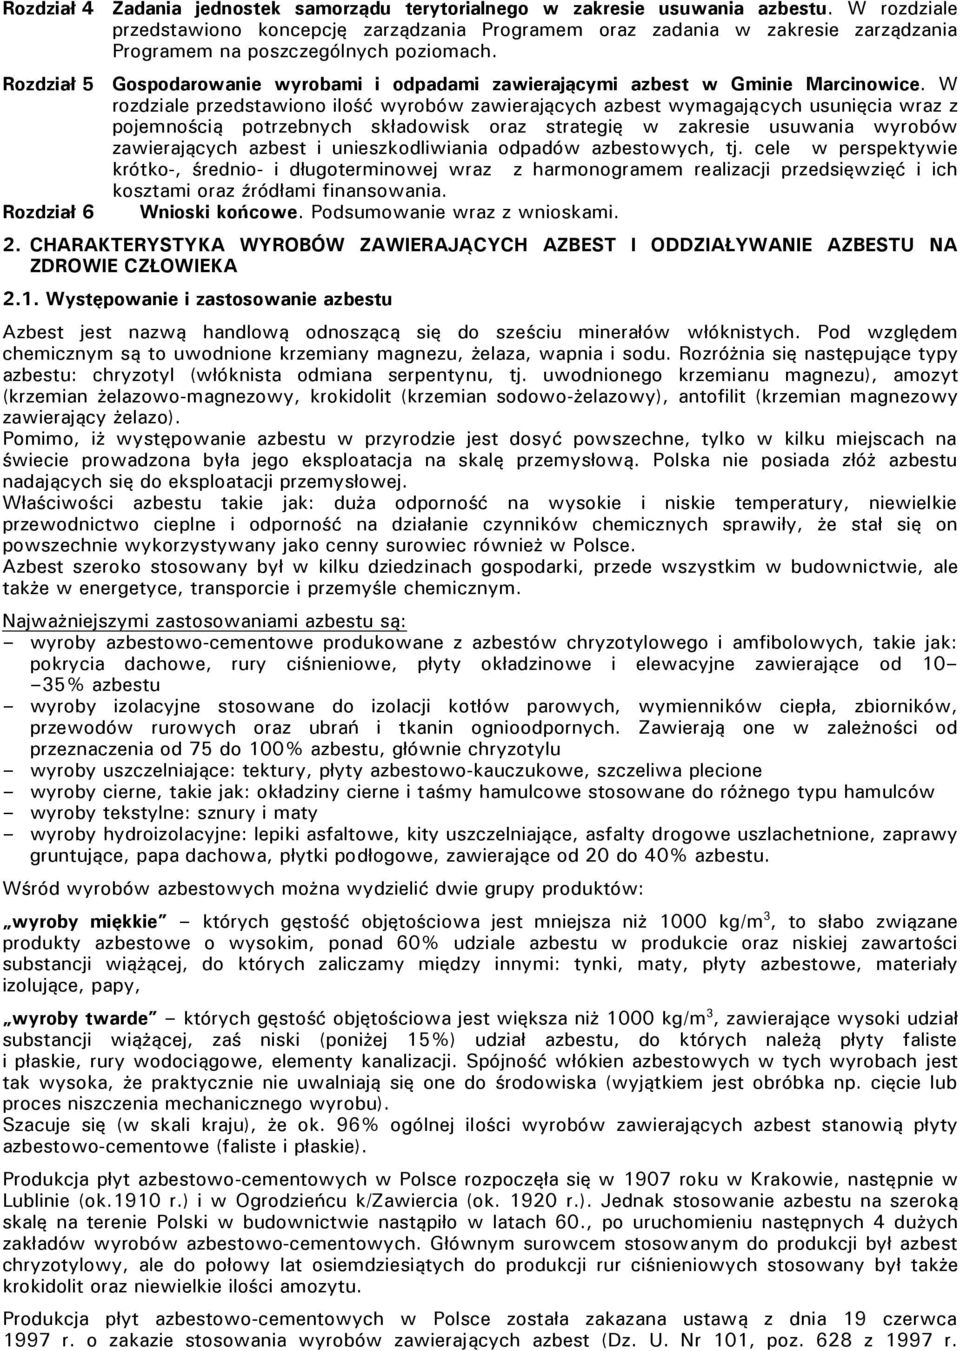 Rozdział 5 Gospodarowanie wyrobami i odpadami zawierającymi azbest w Gminie Marcinowice.